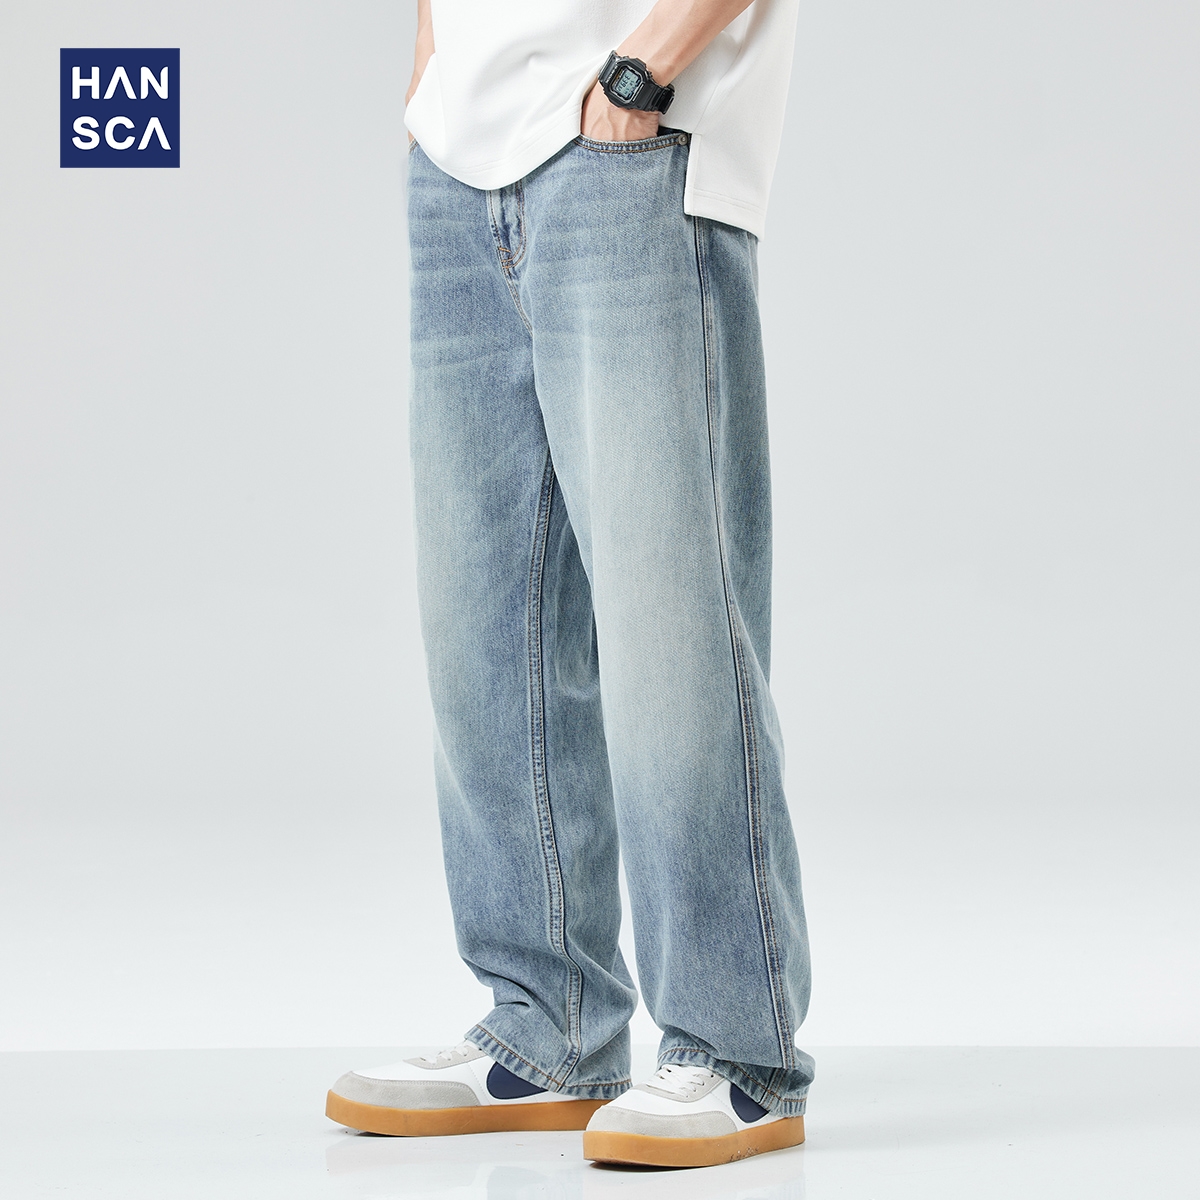 hansca莱赛尔天丝牛仔裤 直筒宽松垂感阔腿休闲长裤 薄款 男潮牌夏季